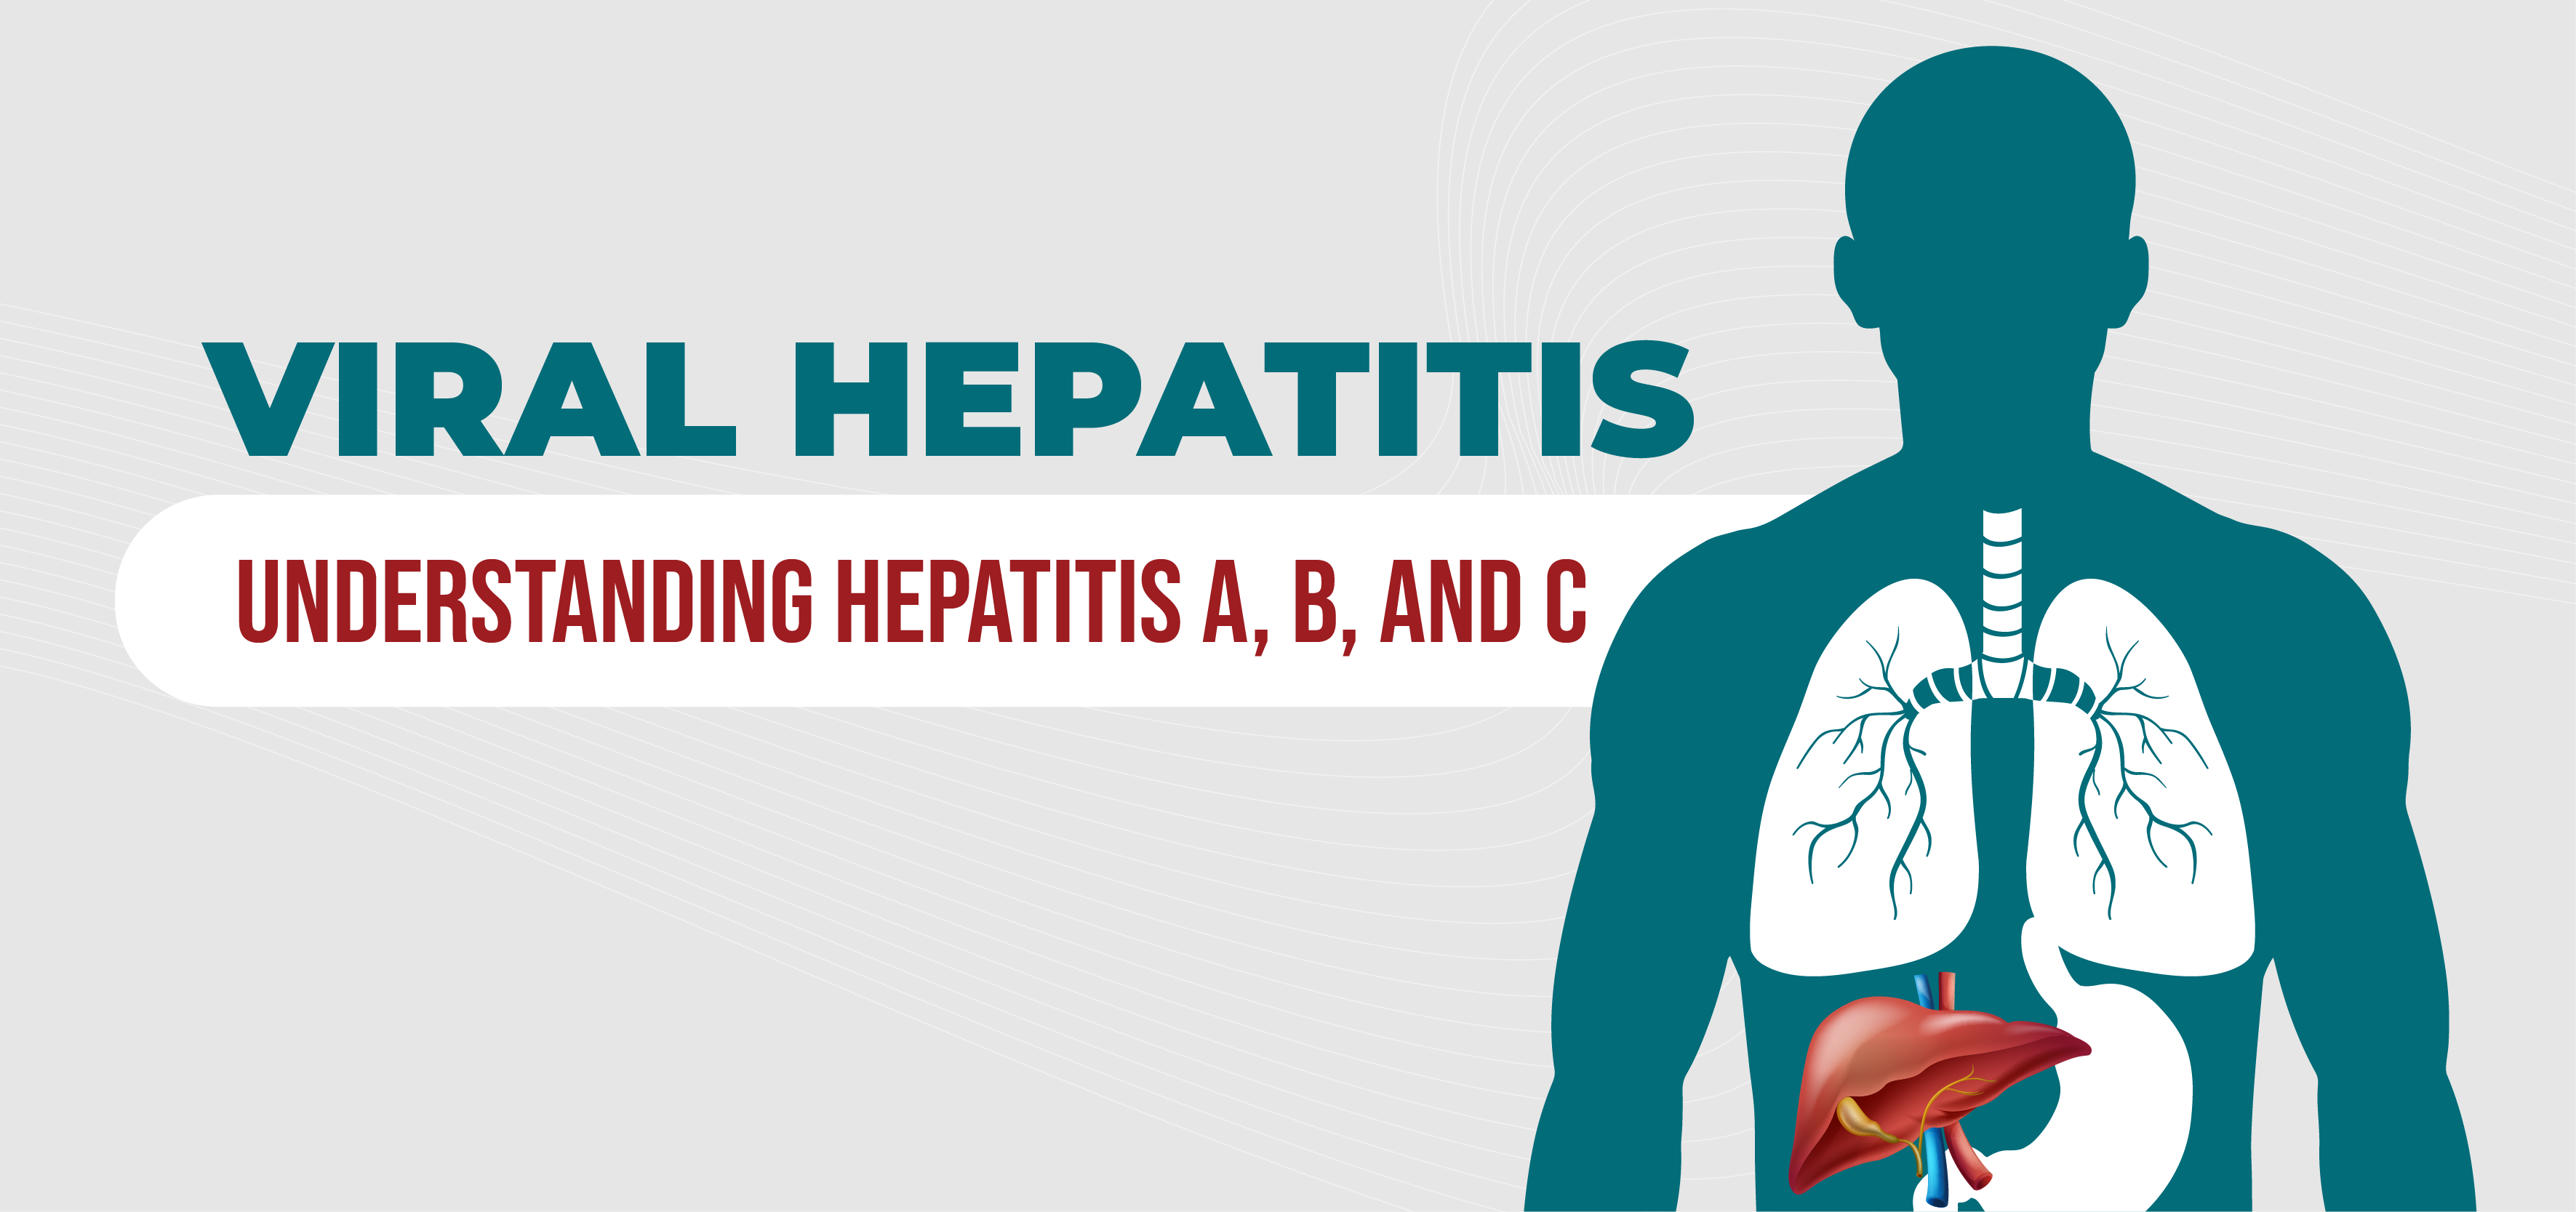 Viral Hepatitis: Understanding Hepatitis A, B, and C